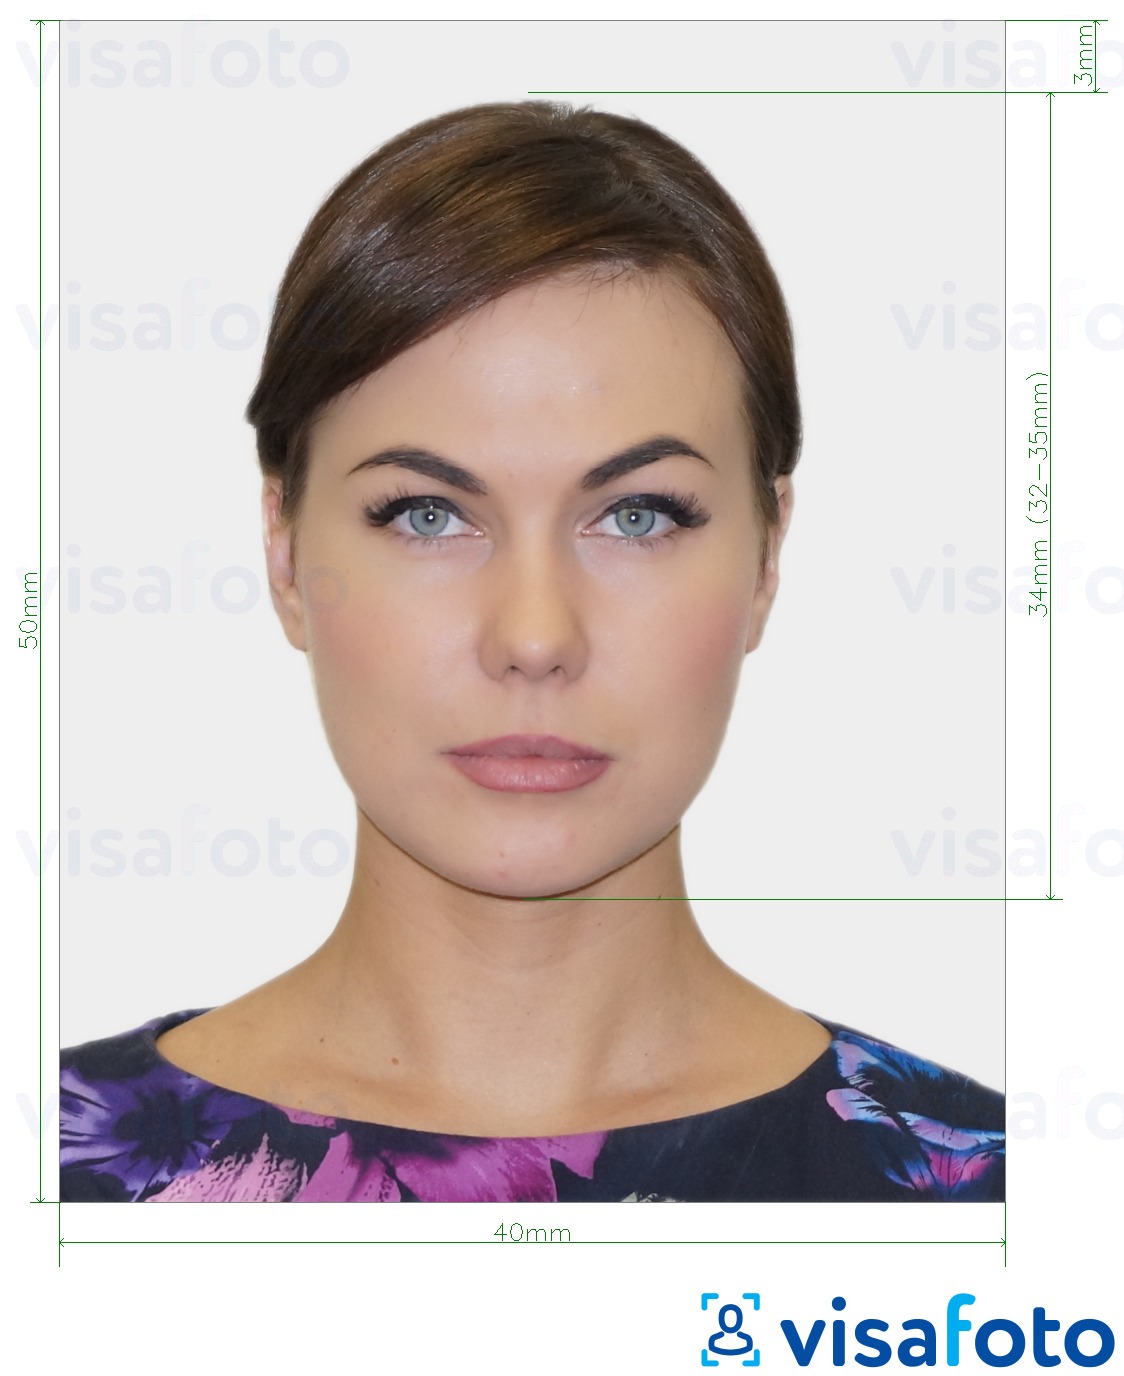 सटीक आकार विनिर्देश के साथ बेलारूस पासपोर्ट 40x50 मिमी (4x5 सेमी) के लिए तस्वीर का उदाहरण